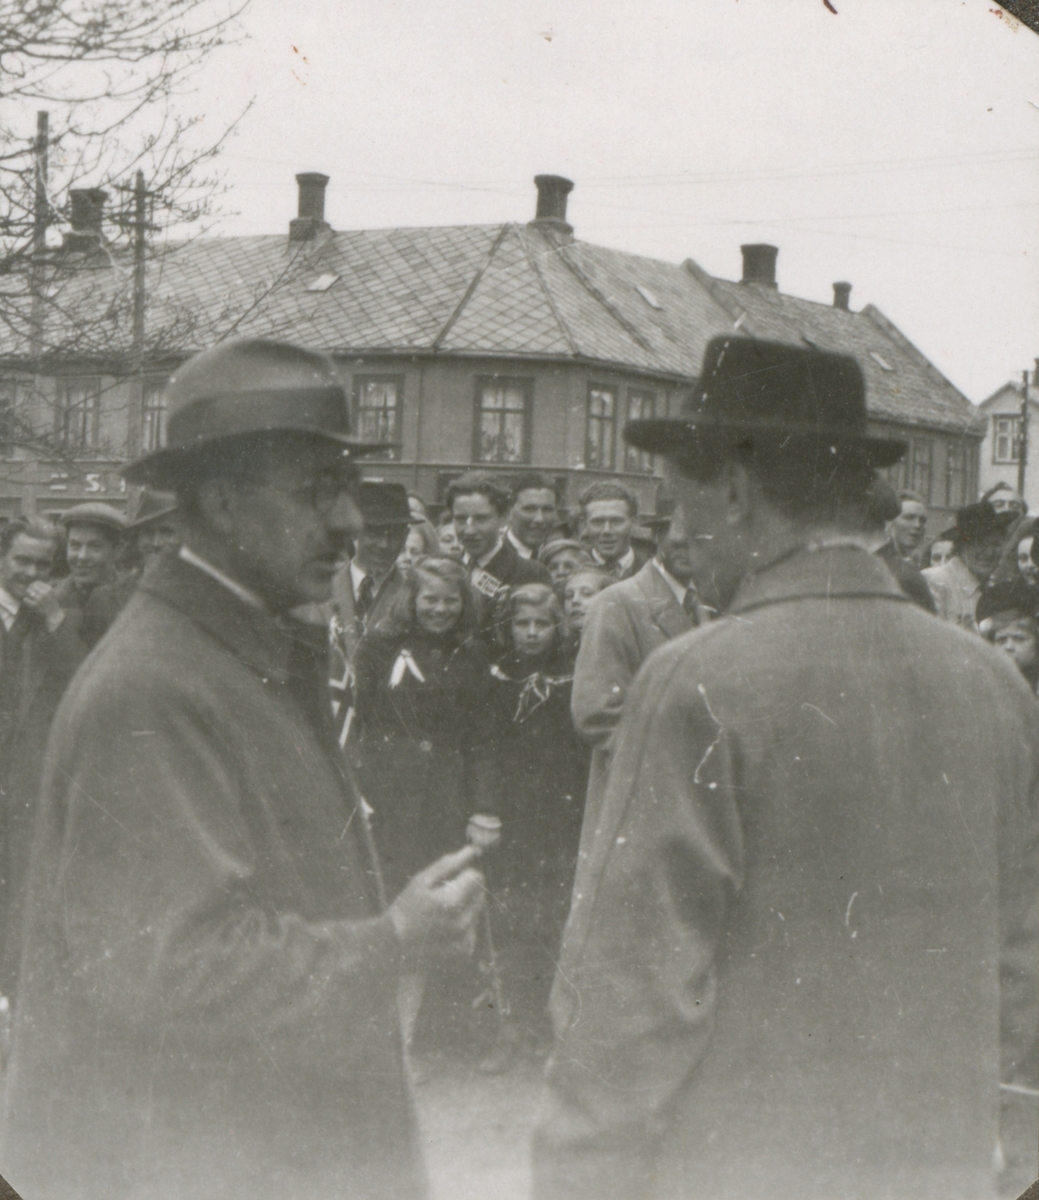 Ei stor folkemengde feirer friheten i Levanger sentrum, 8. mai 1945.